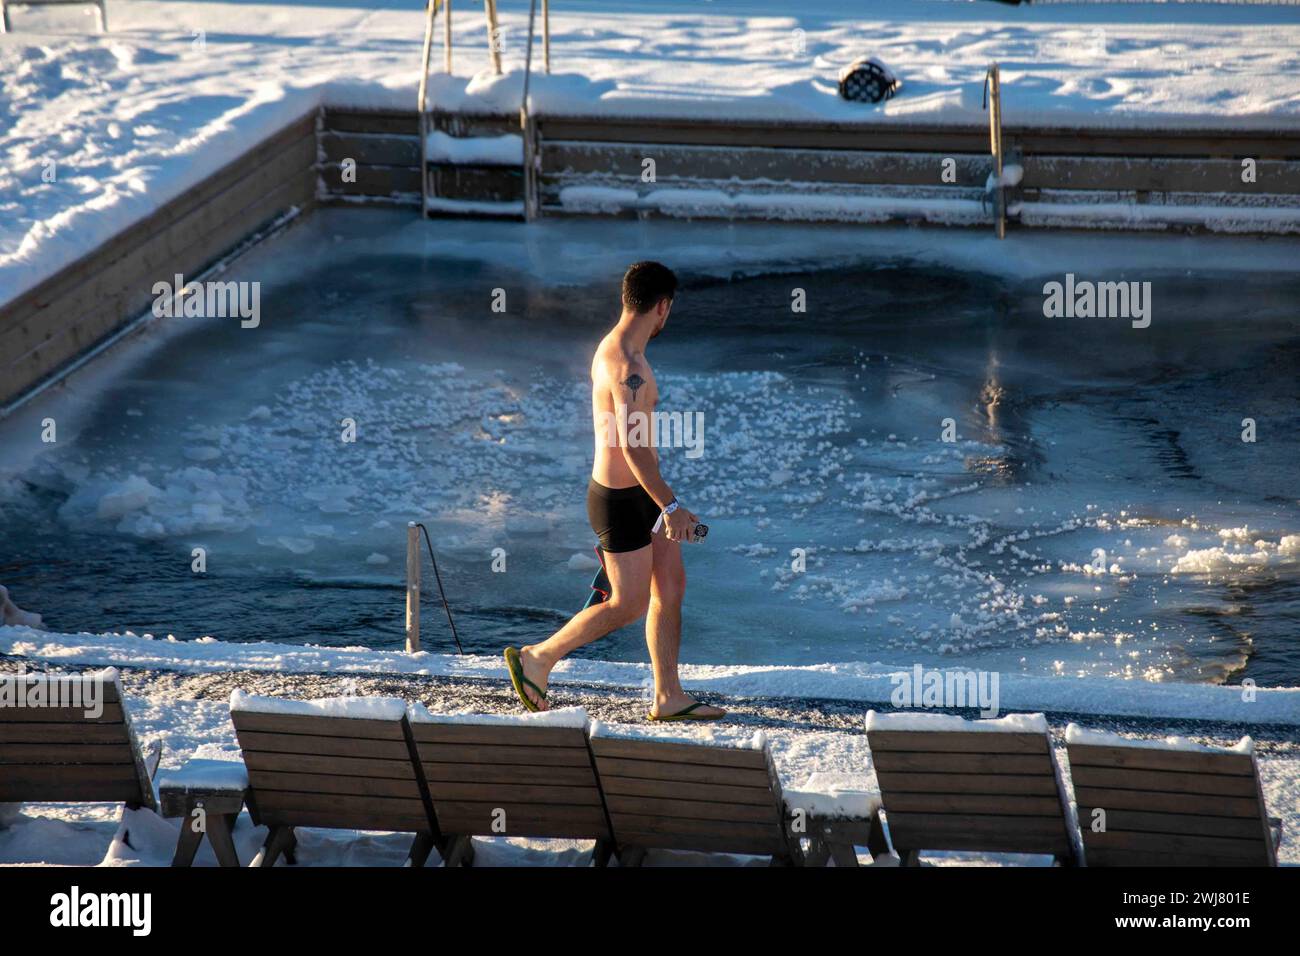 Homme marchant devant la piscine d'eau de mer gelée à Allas Sea Pool, un spa marin et lido, lors d'une journée d'hiver ensoleillée dans le district de Katajanokka à Helsinki, en Finlande Banque D'Images